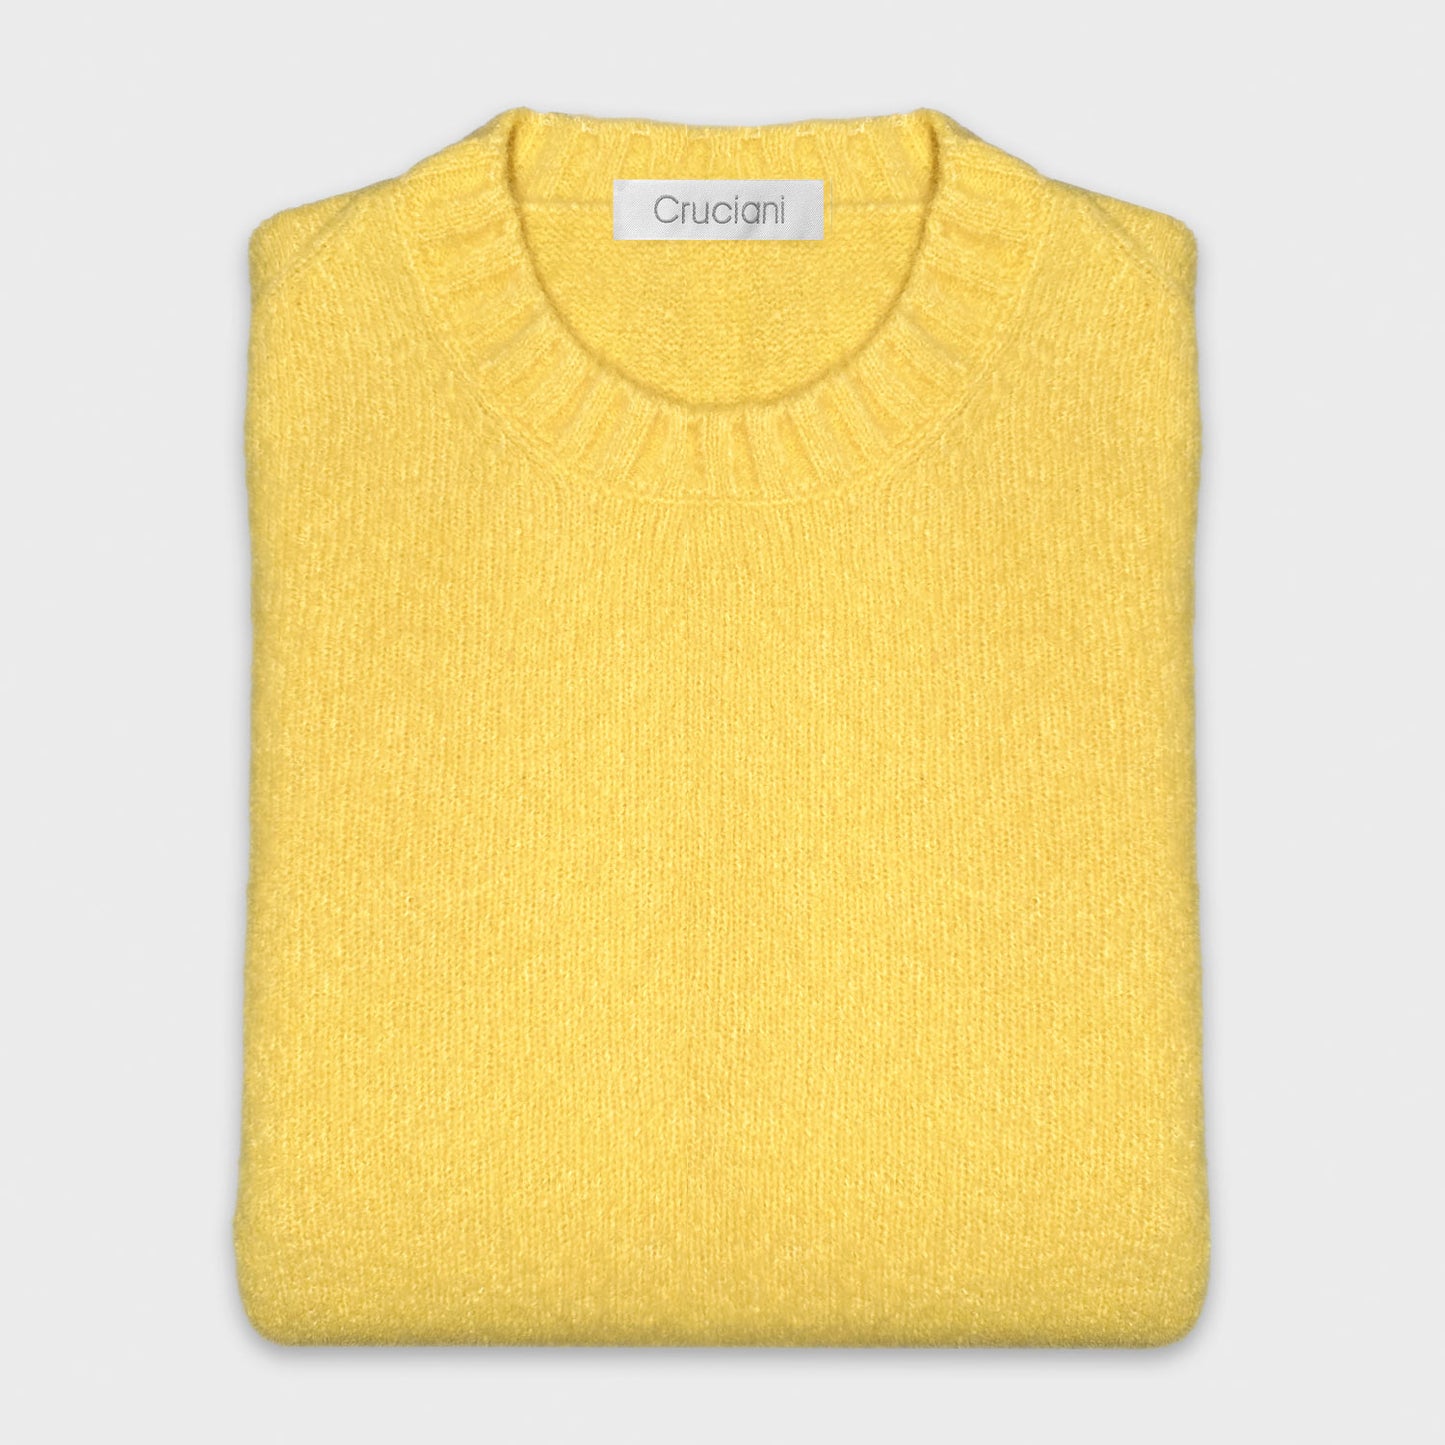 Lemon Yellow Shetland Wool Crewneck Sweater Cruciani.